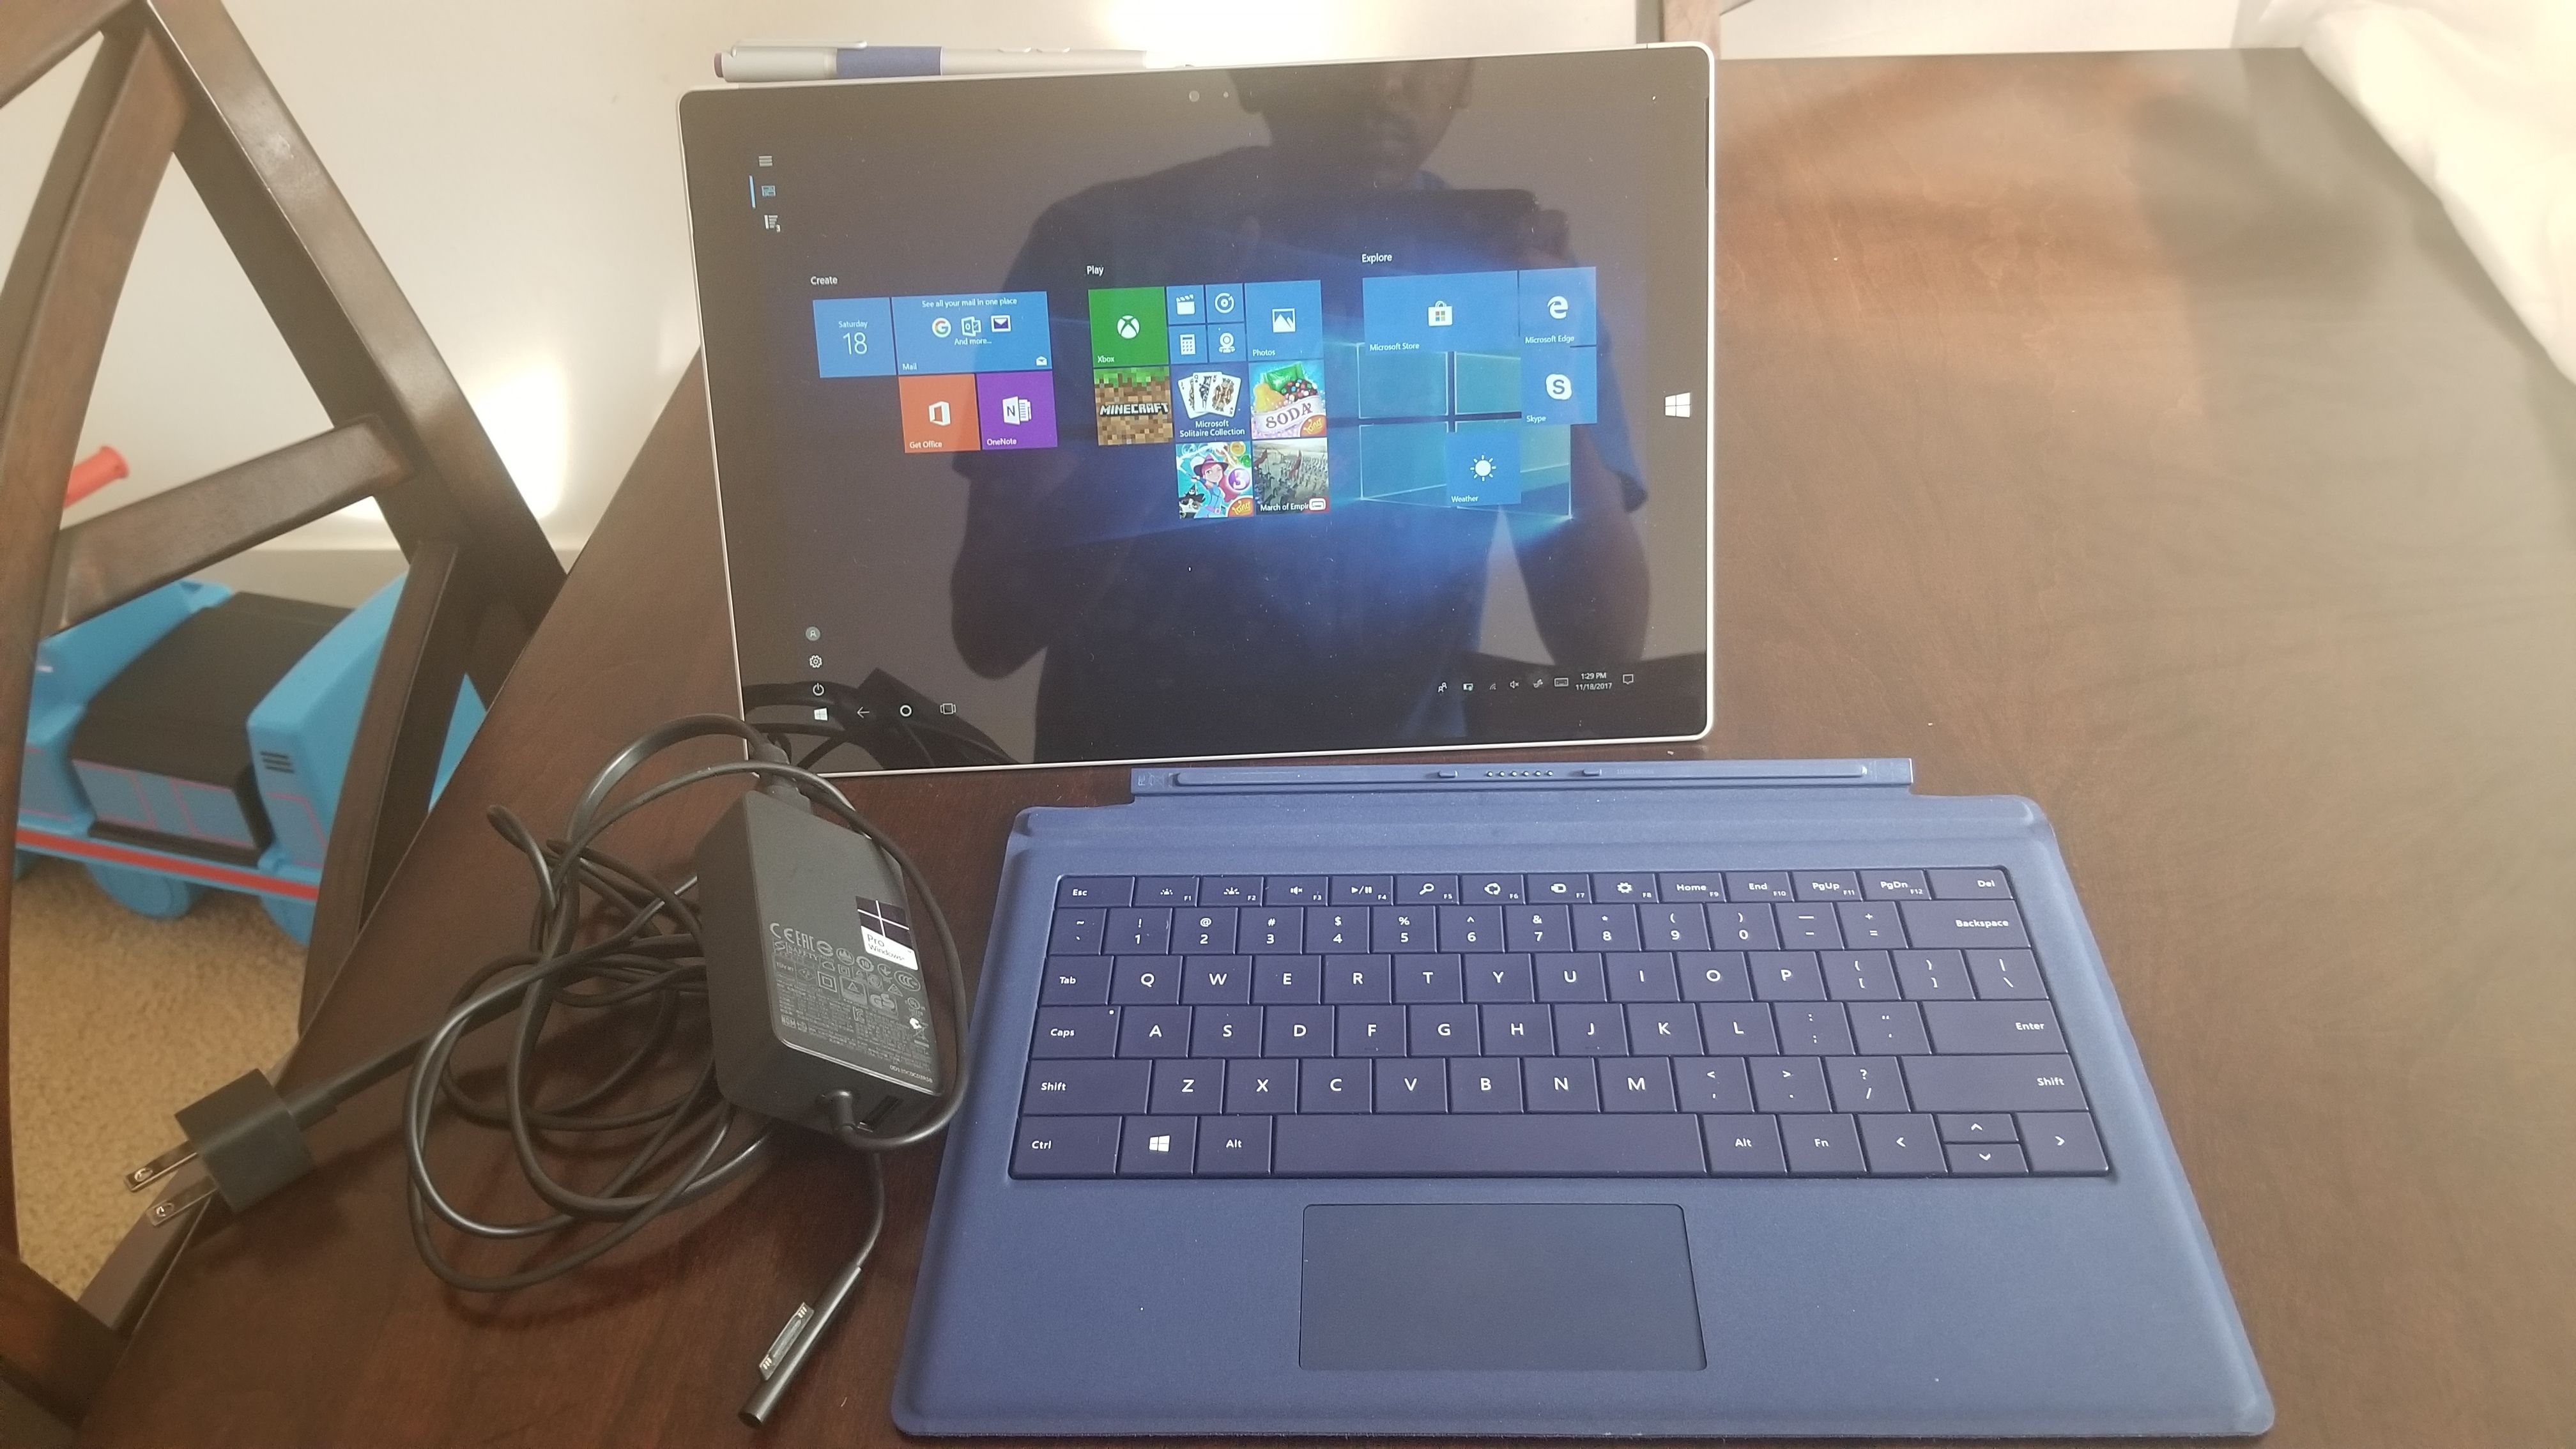 Microsoft Surface 3 pro